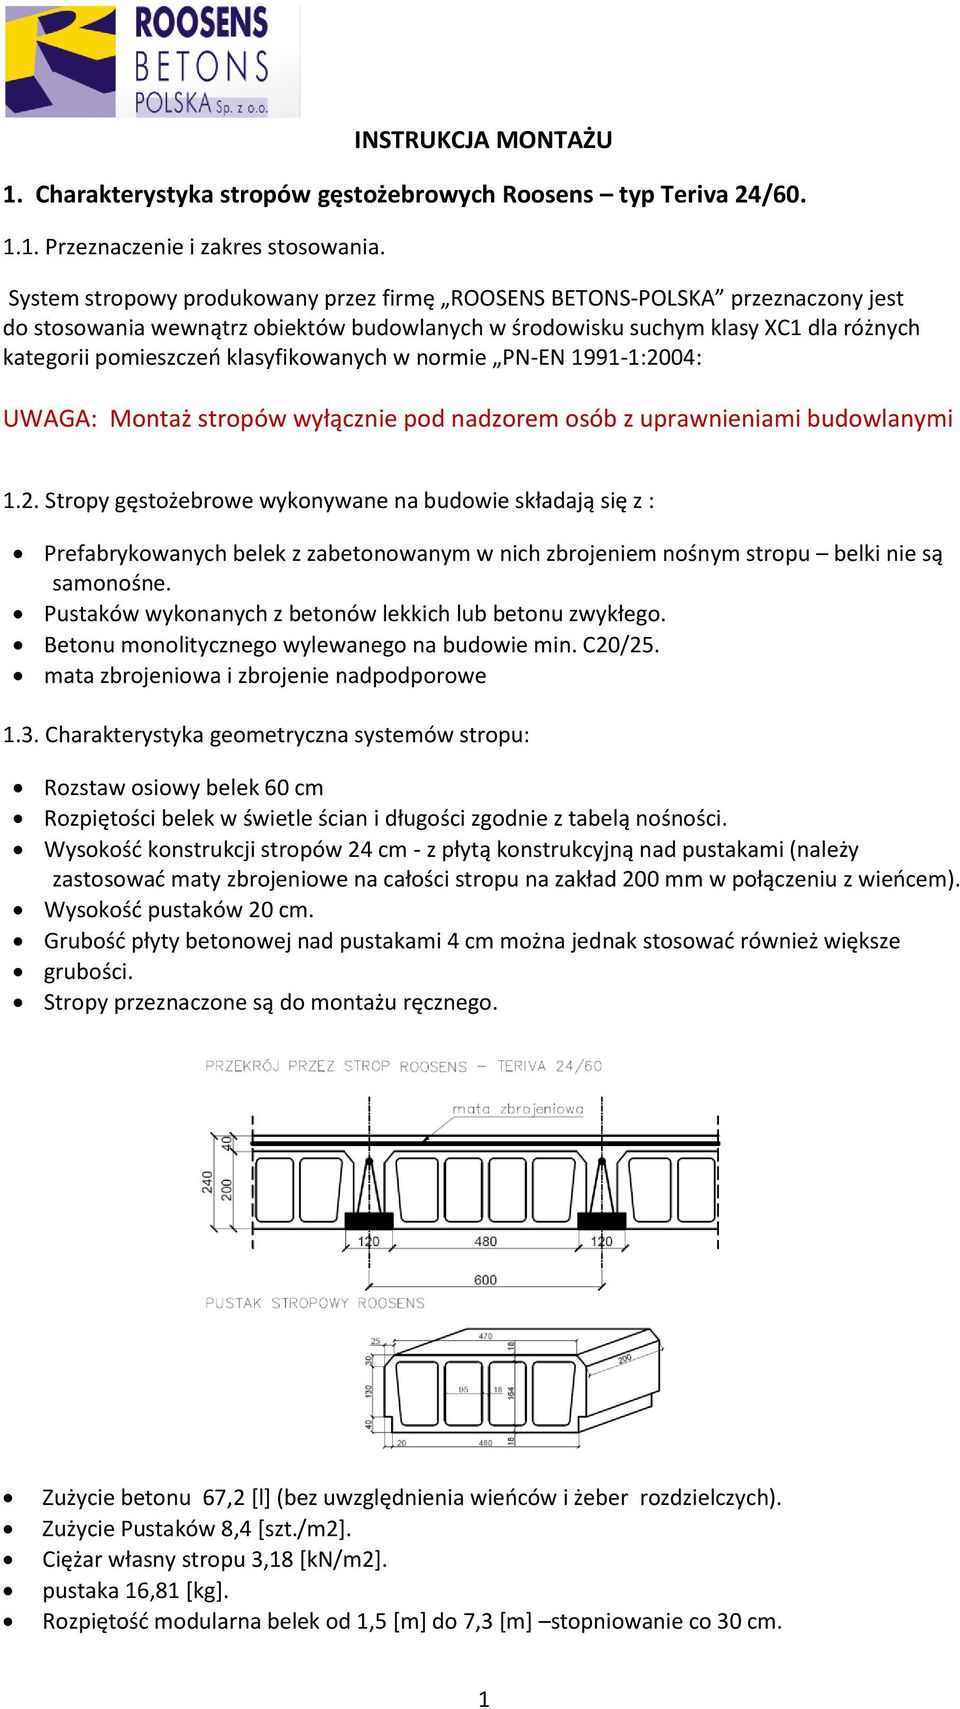 klasyfikowanych w normie PN-EN 1991-1:2004: UWAGA: Montaż stropów wyłącznie pod nadzorem osób z uprawnieniami budowlanymi 1.2. Stropy gęstożebrowe wykonywane na budowie składają się z : Prefabrykowanych belek z zabetonowanym w nich zbrojeniem nośnym stropu belki nie są samonośne.